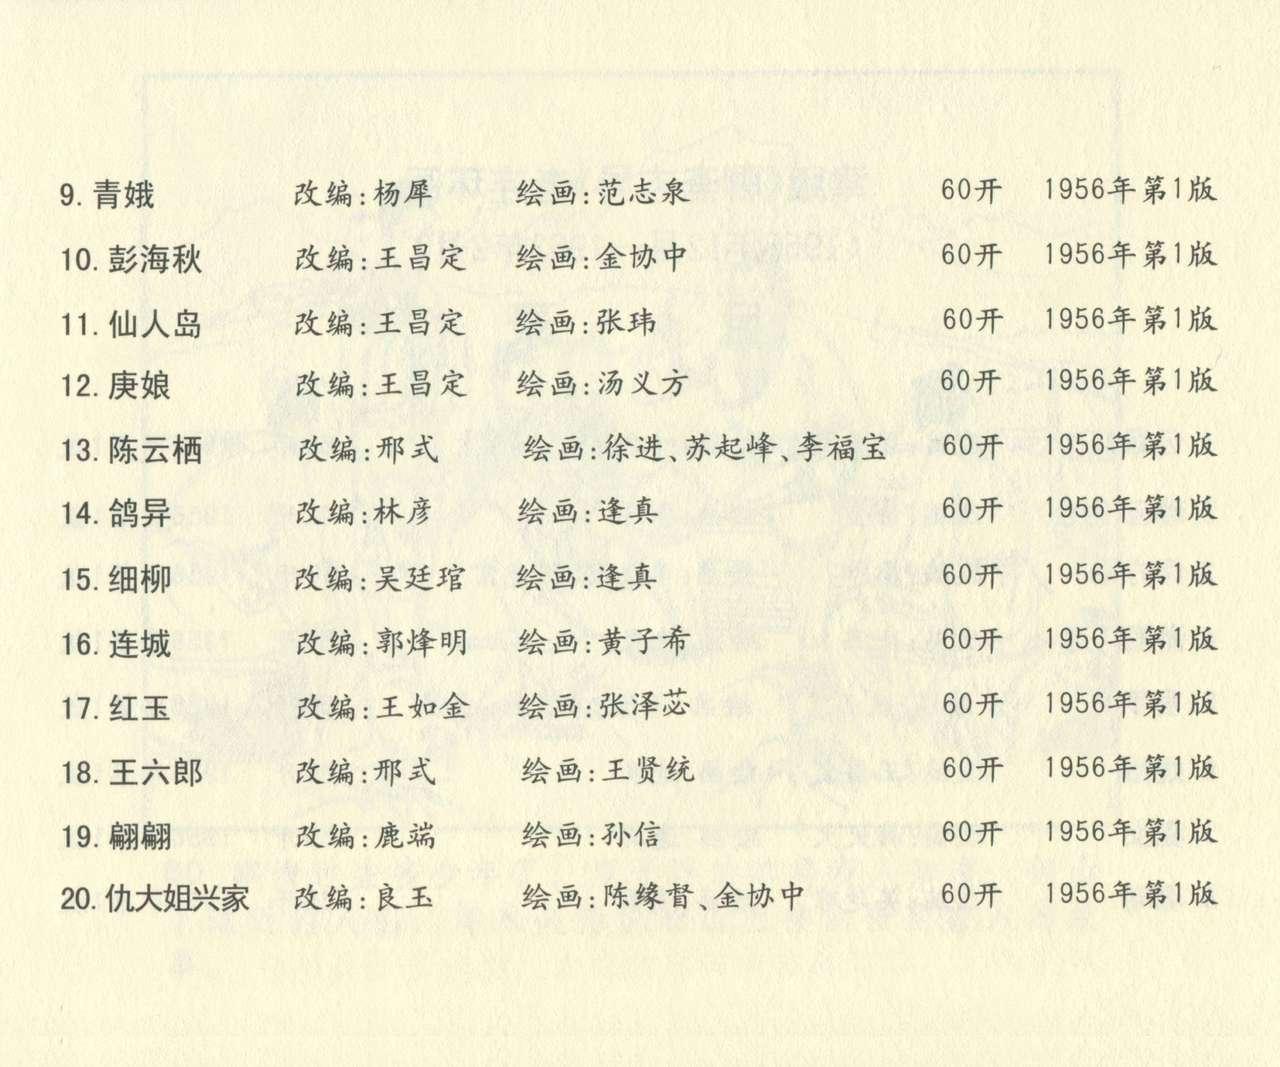 聊斋志异 张玮等绘 天津人民美术出版社 卷二十一 ~ 三十 678